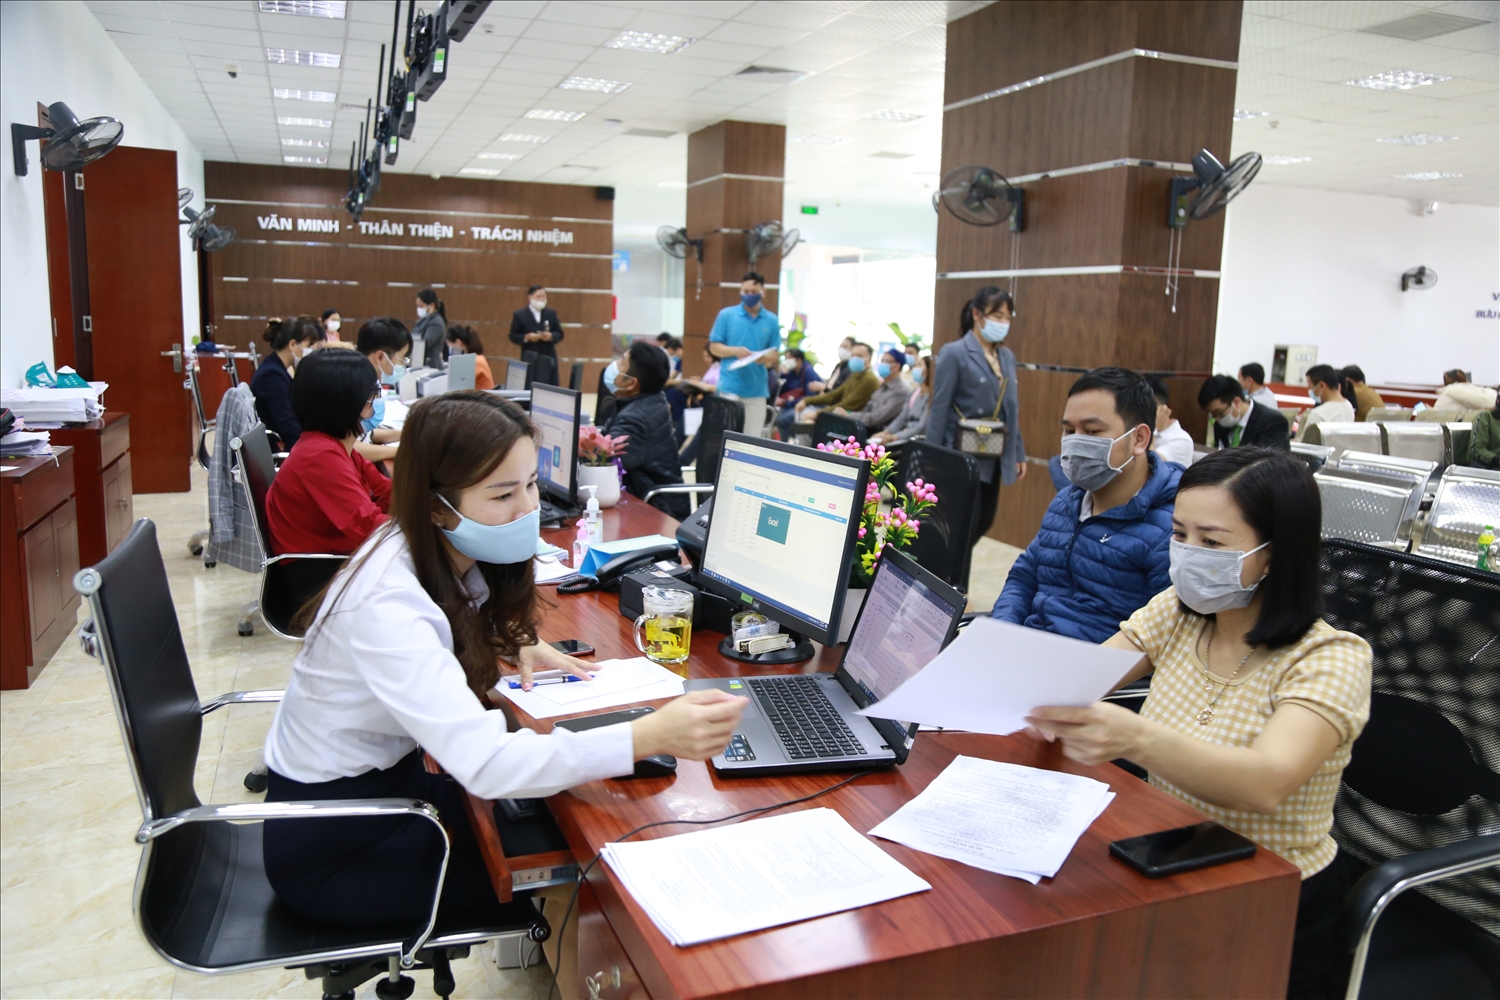 Trung tâm phục vụ hành chính công là một trong những giải pháp đột phá trong cải cách hành chính của tỉnh Lào Cai 